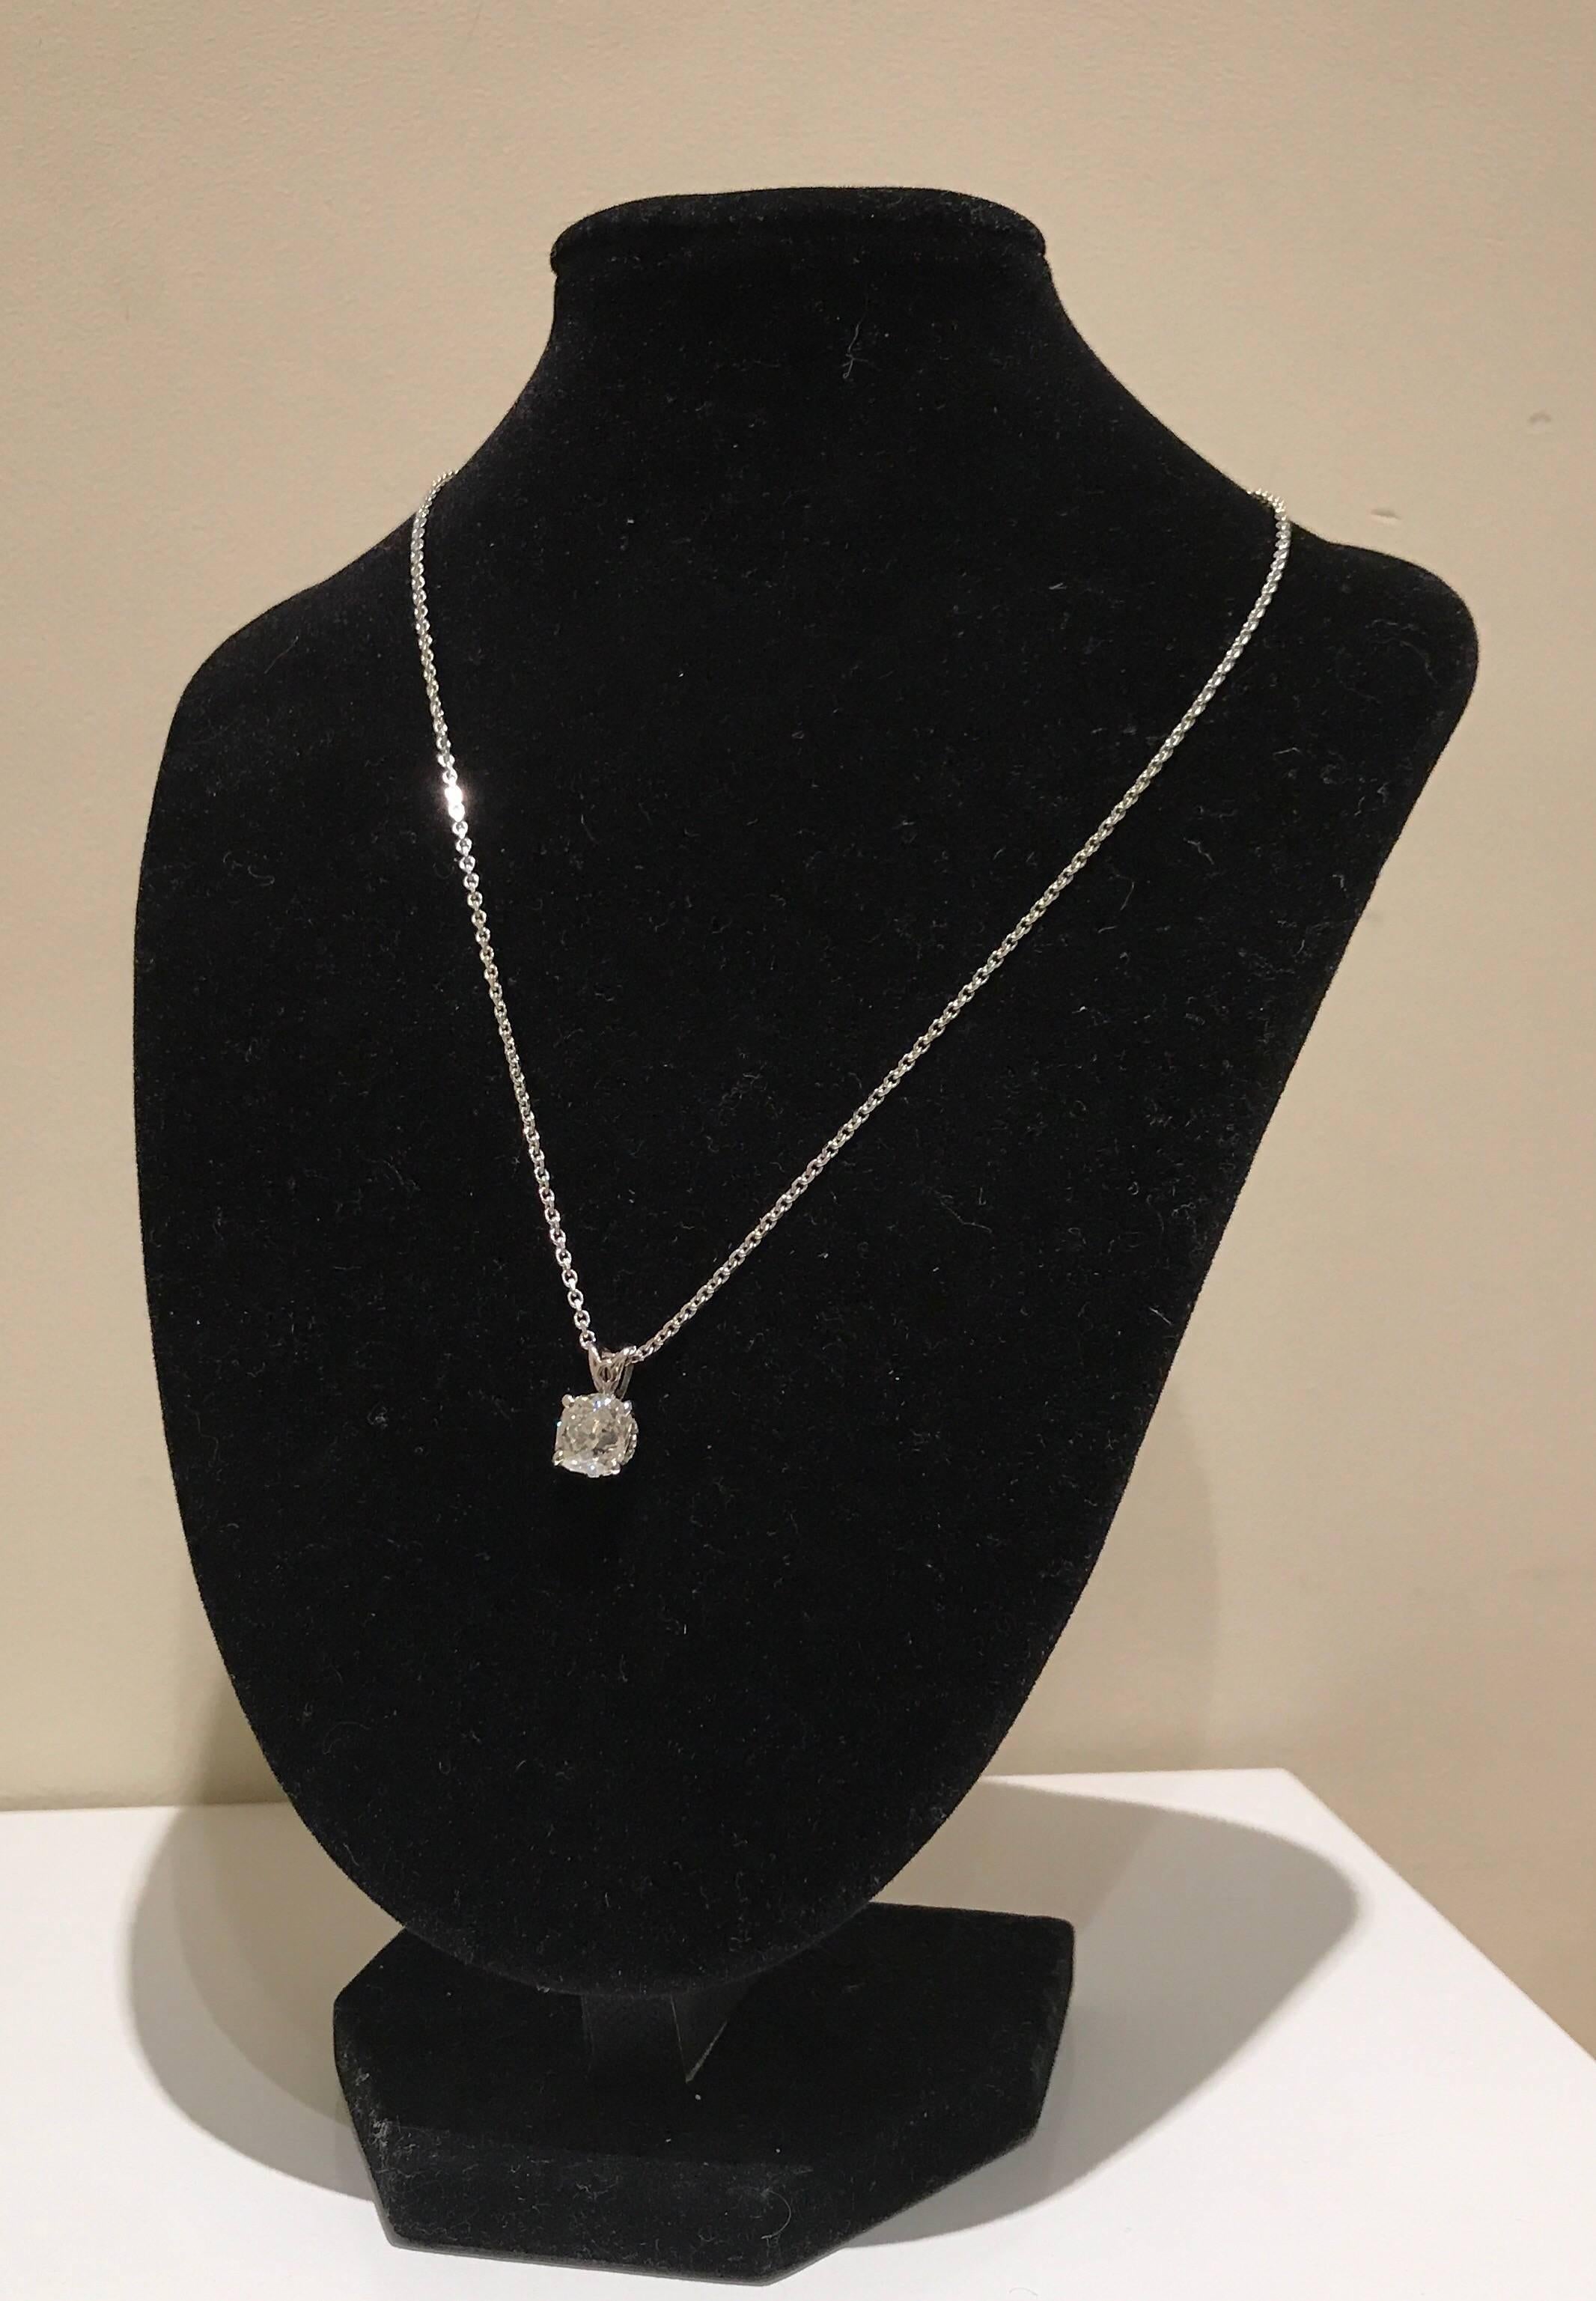 Old Mine Cut Diamond Pendant Necklace 2 Carat 4